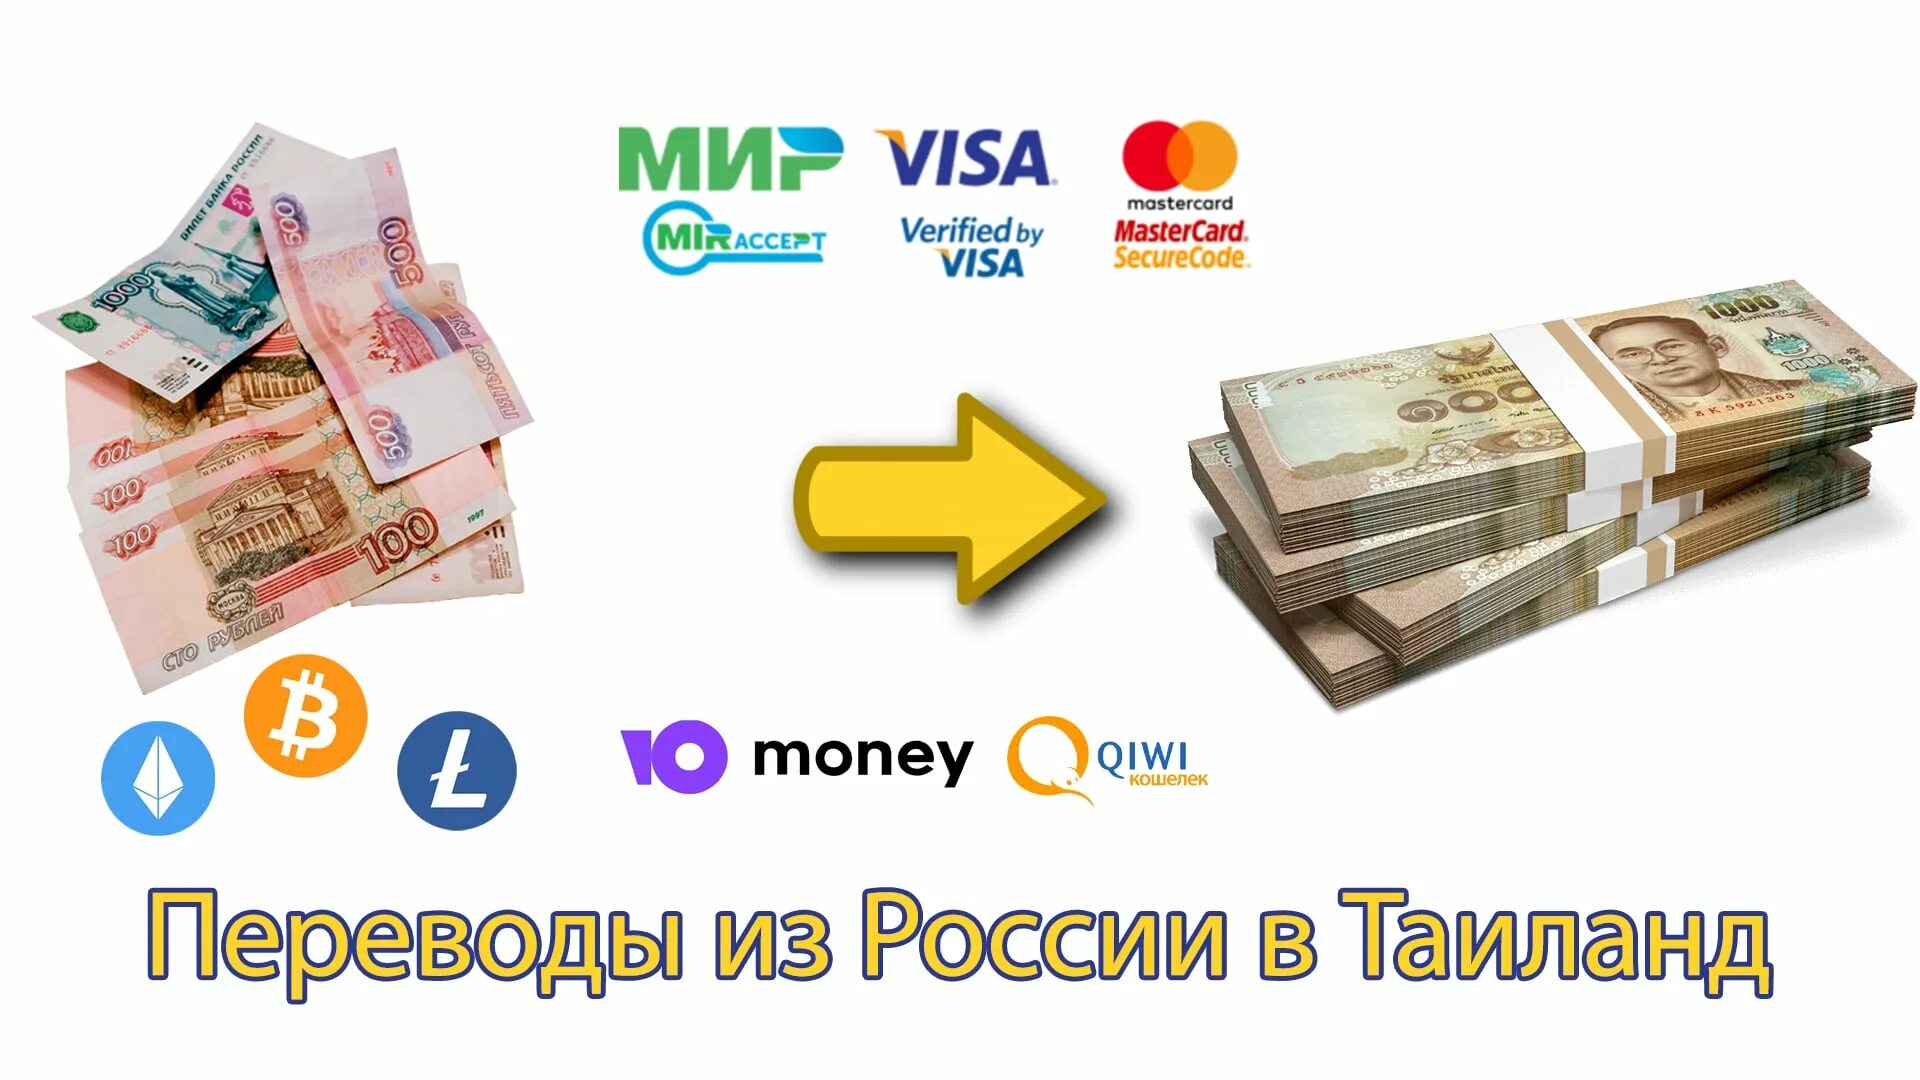 Обменять рубли на баты. Как обменять рубли на евро. Перевод казахстанских денег в рубли. Как можно обменять Беларусь деньги 2000. Где в москве обменять рубли на доллары